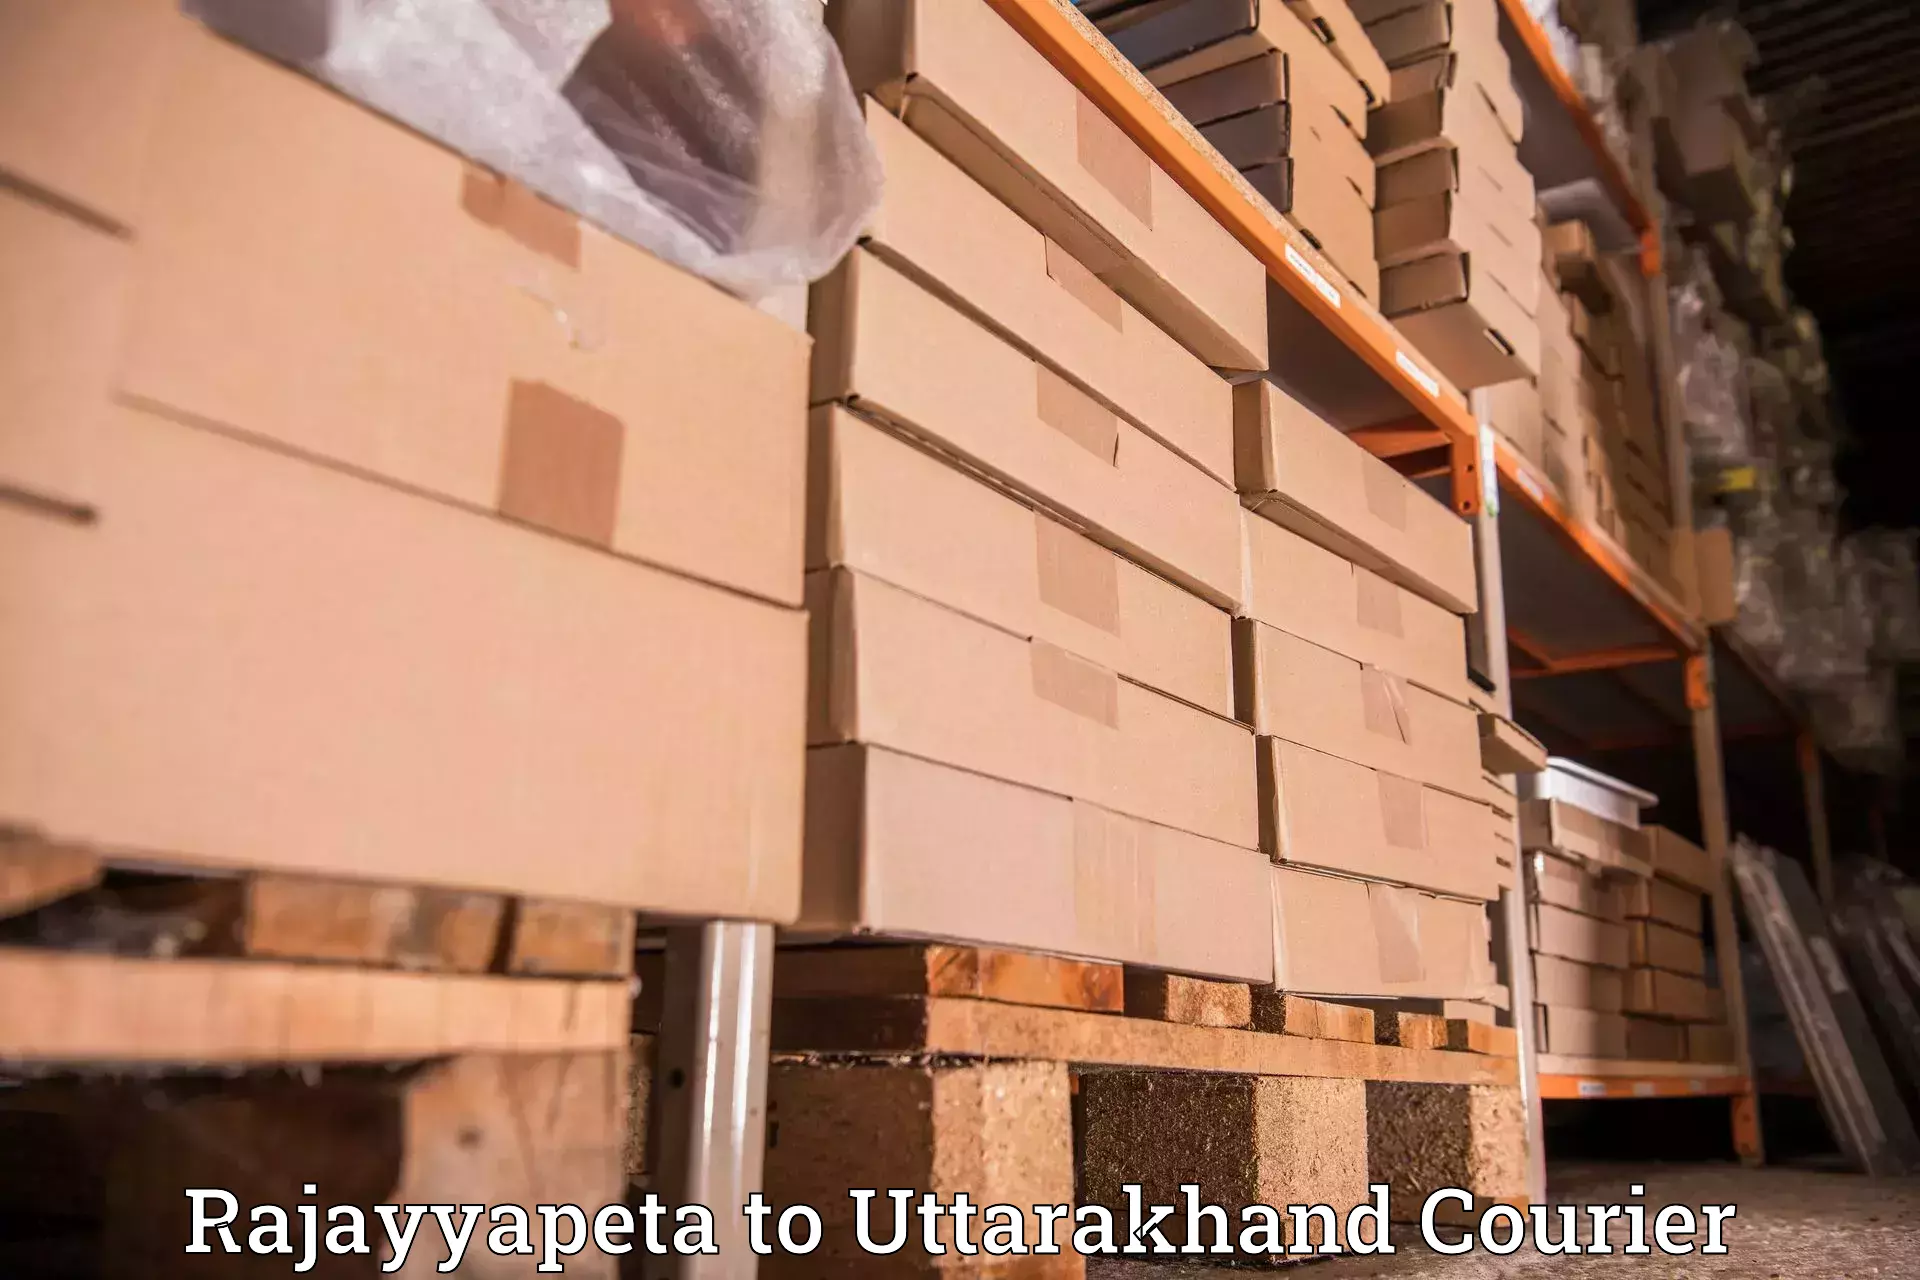 Expedited shipping solutions Rajayyapeta to Khatima